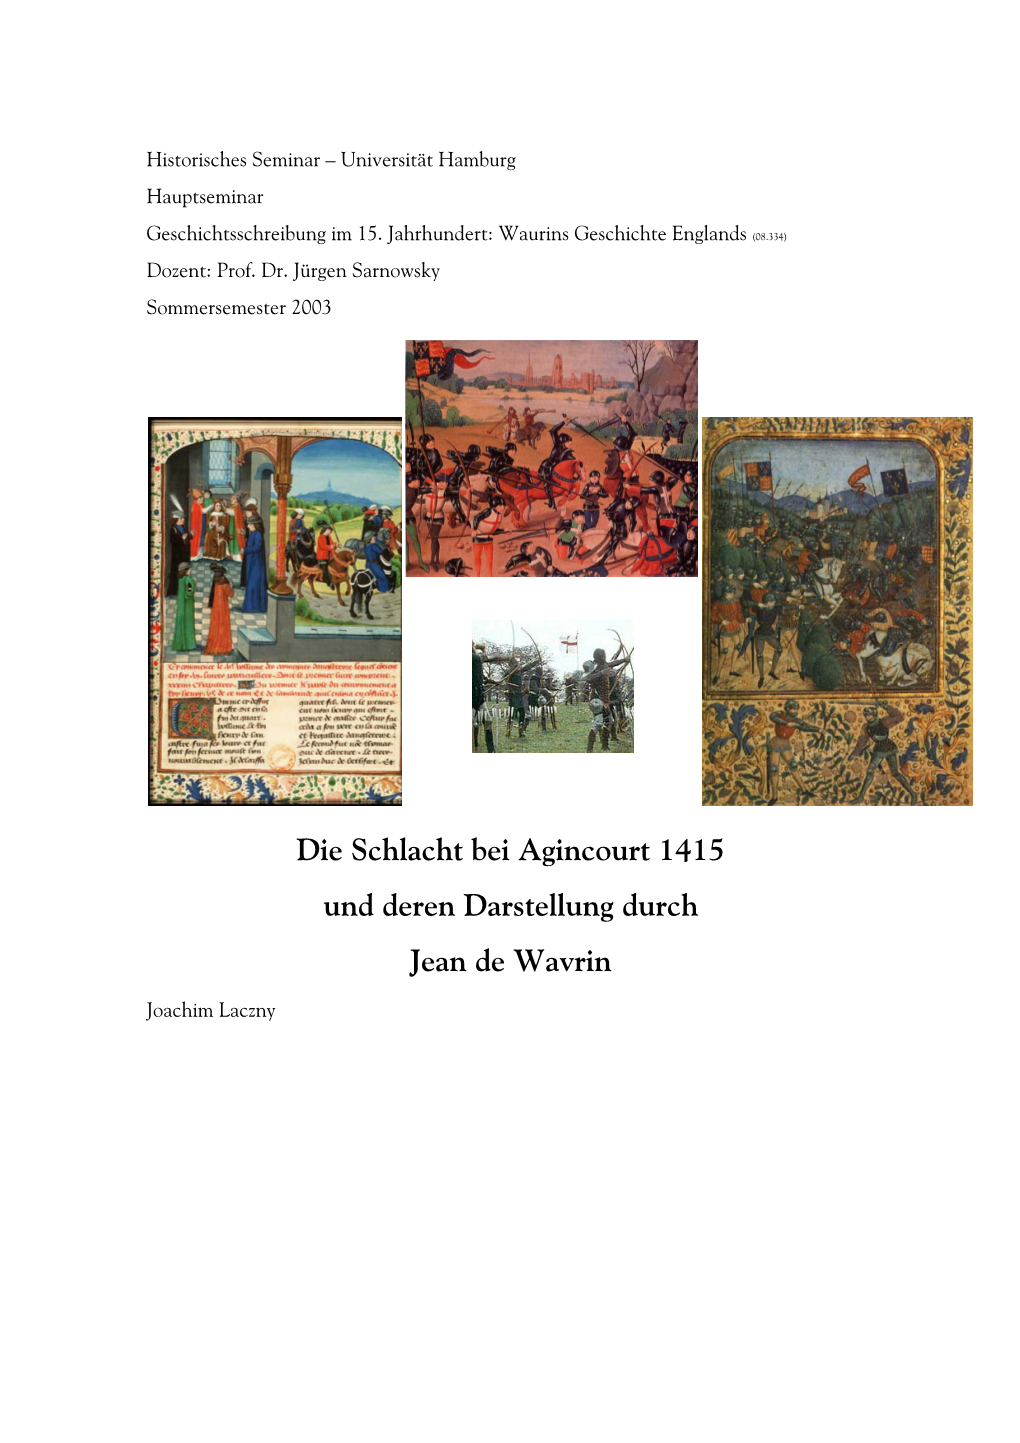 Die Schlacht Bei Agincourt Und Deren Darstellung Bei Jehan De Wavrin